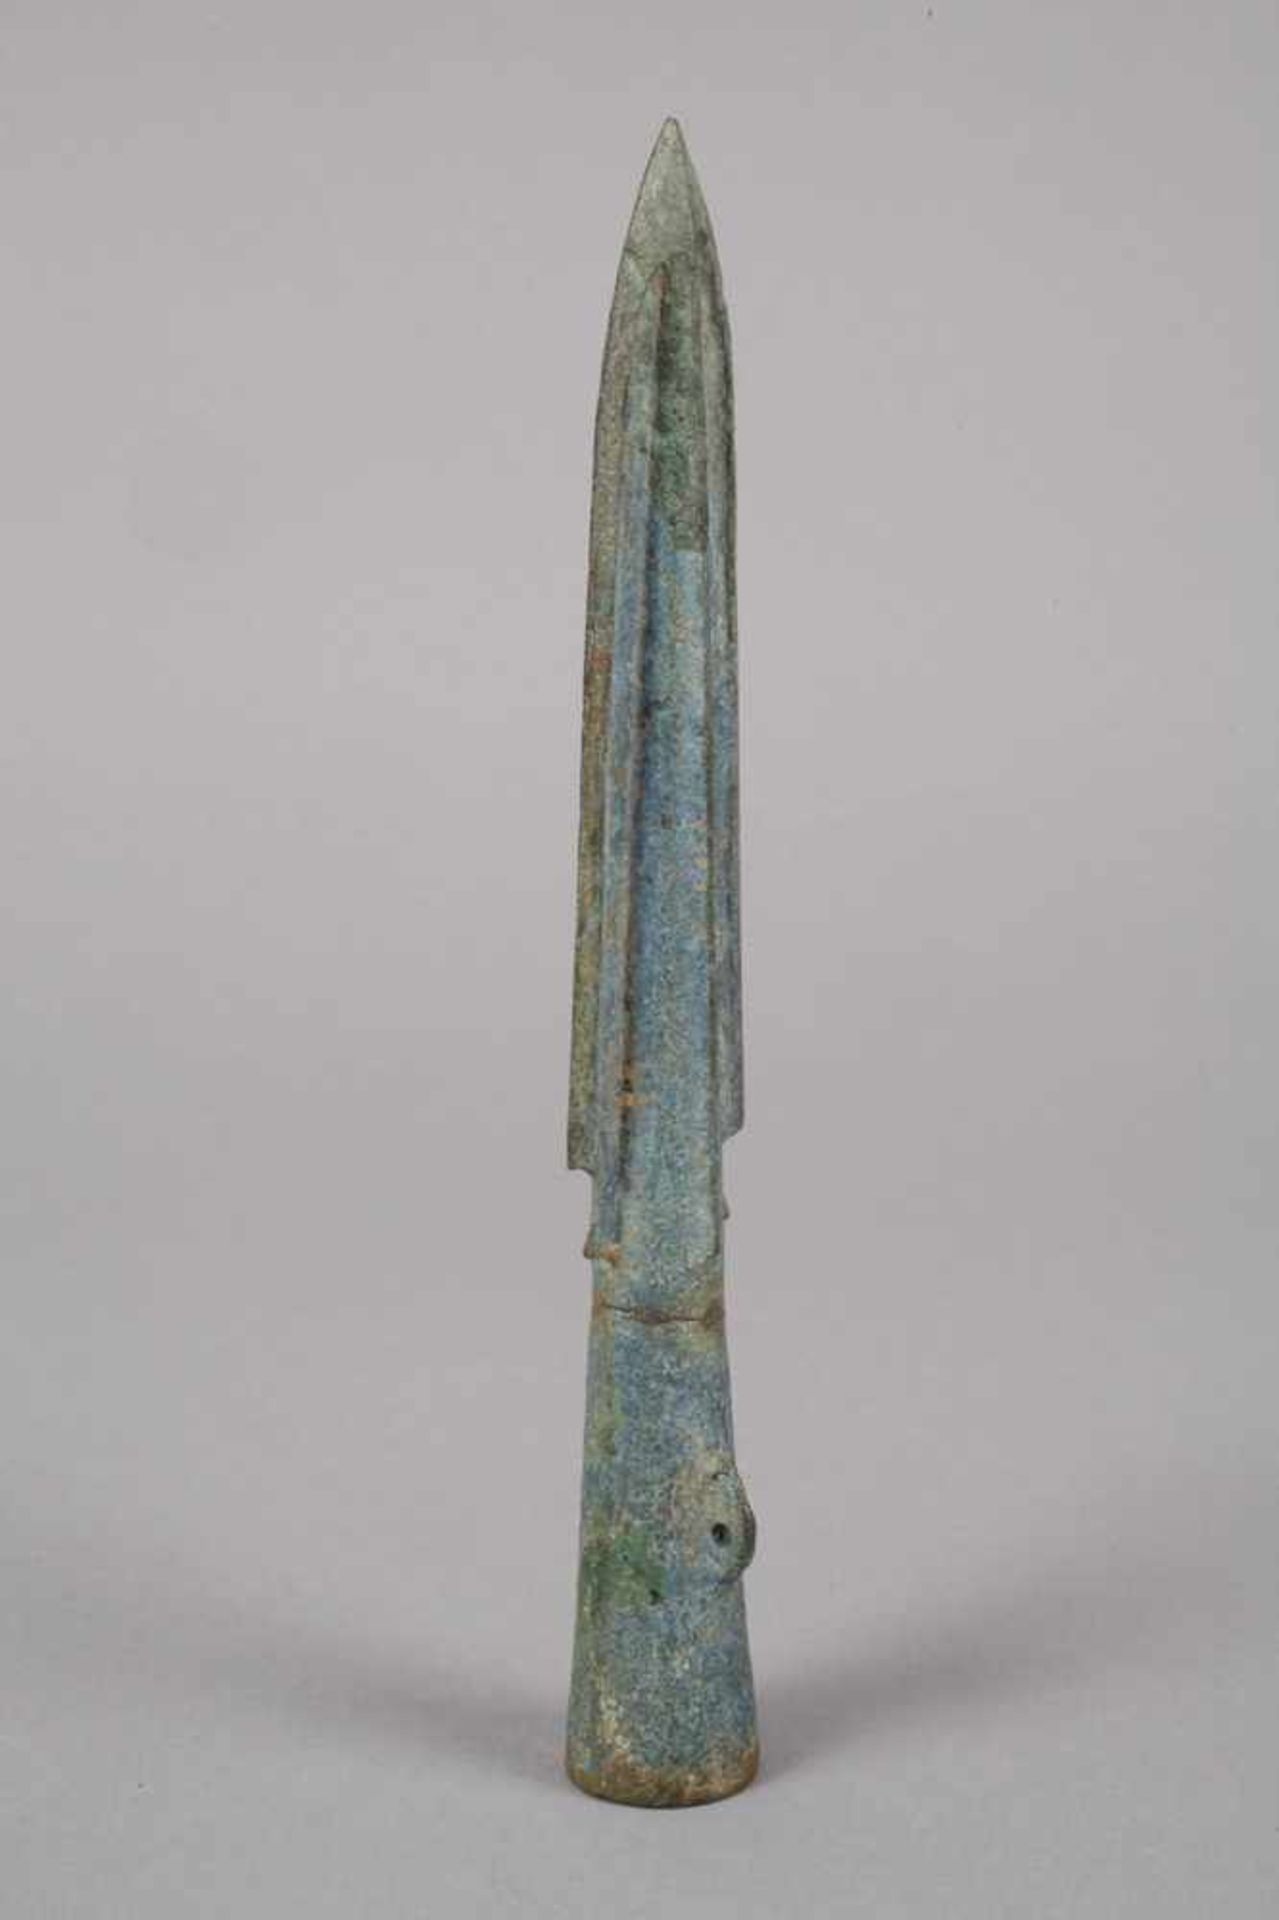 Altchinesische Speerspitzeunbestimmt, vielleicht Shang-Dynastie, 12. Jh. v. Chr., Bronze, - Bild 2 aus 4